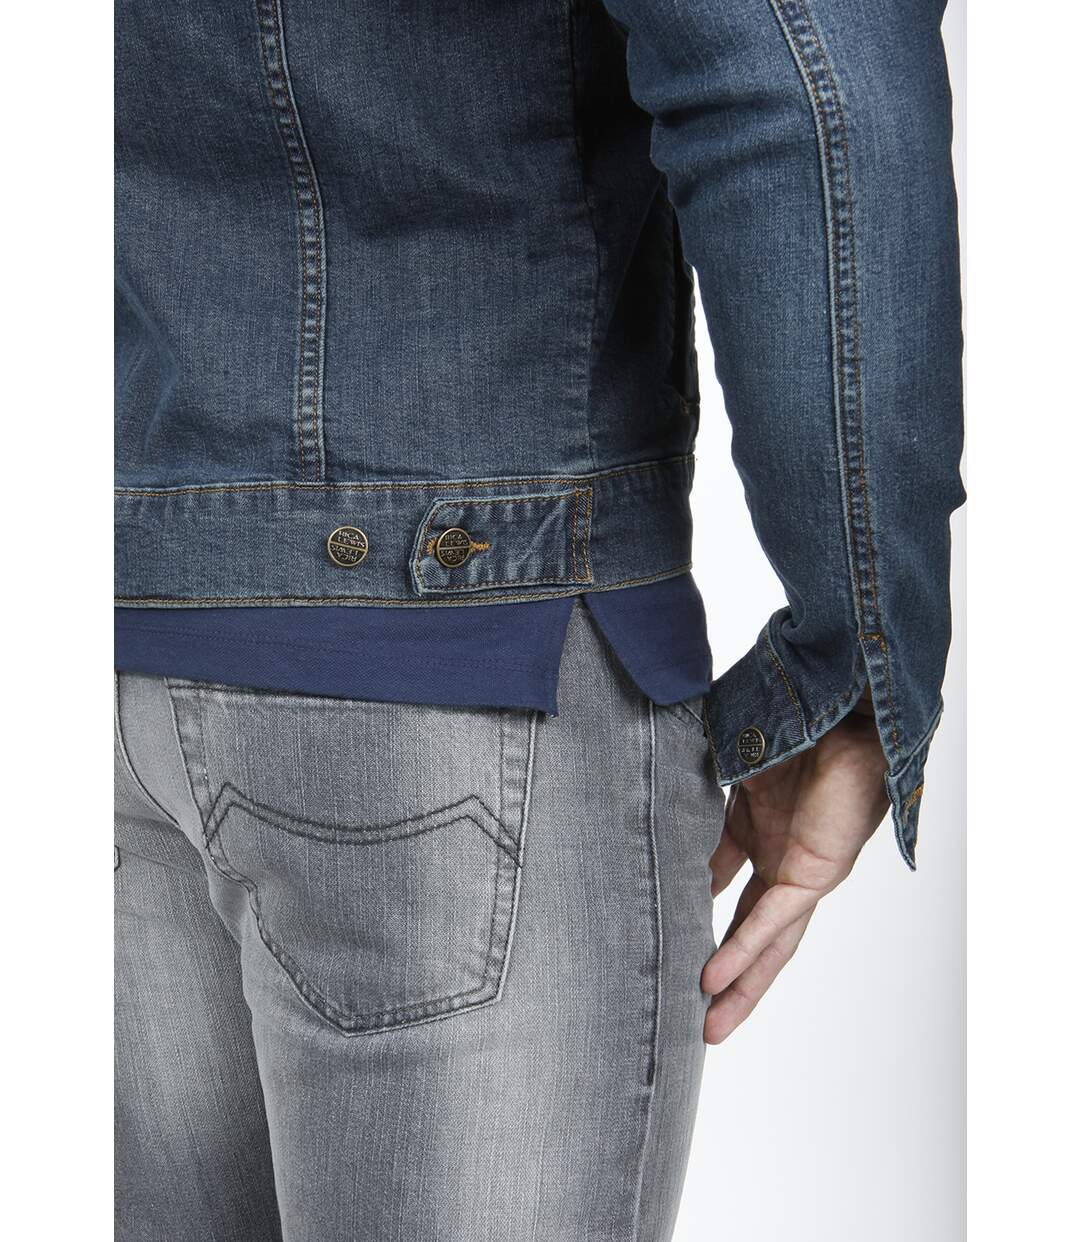 La veste en jeans stretch coupe ajustée FAITH DENIM